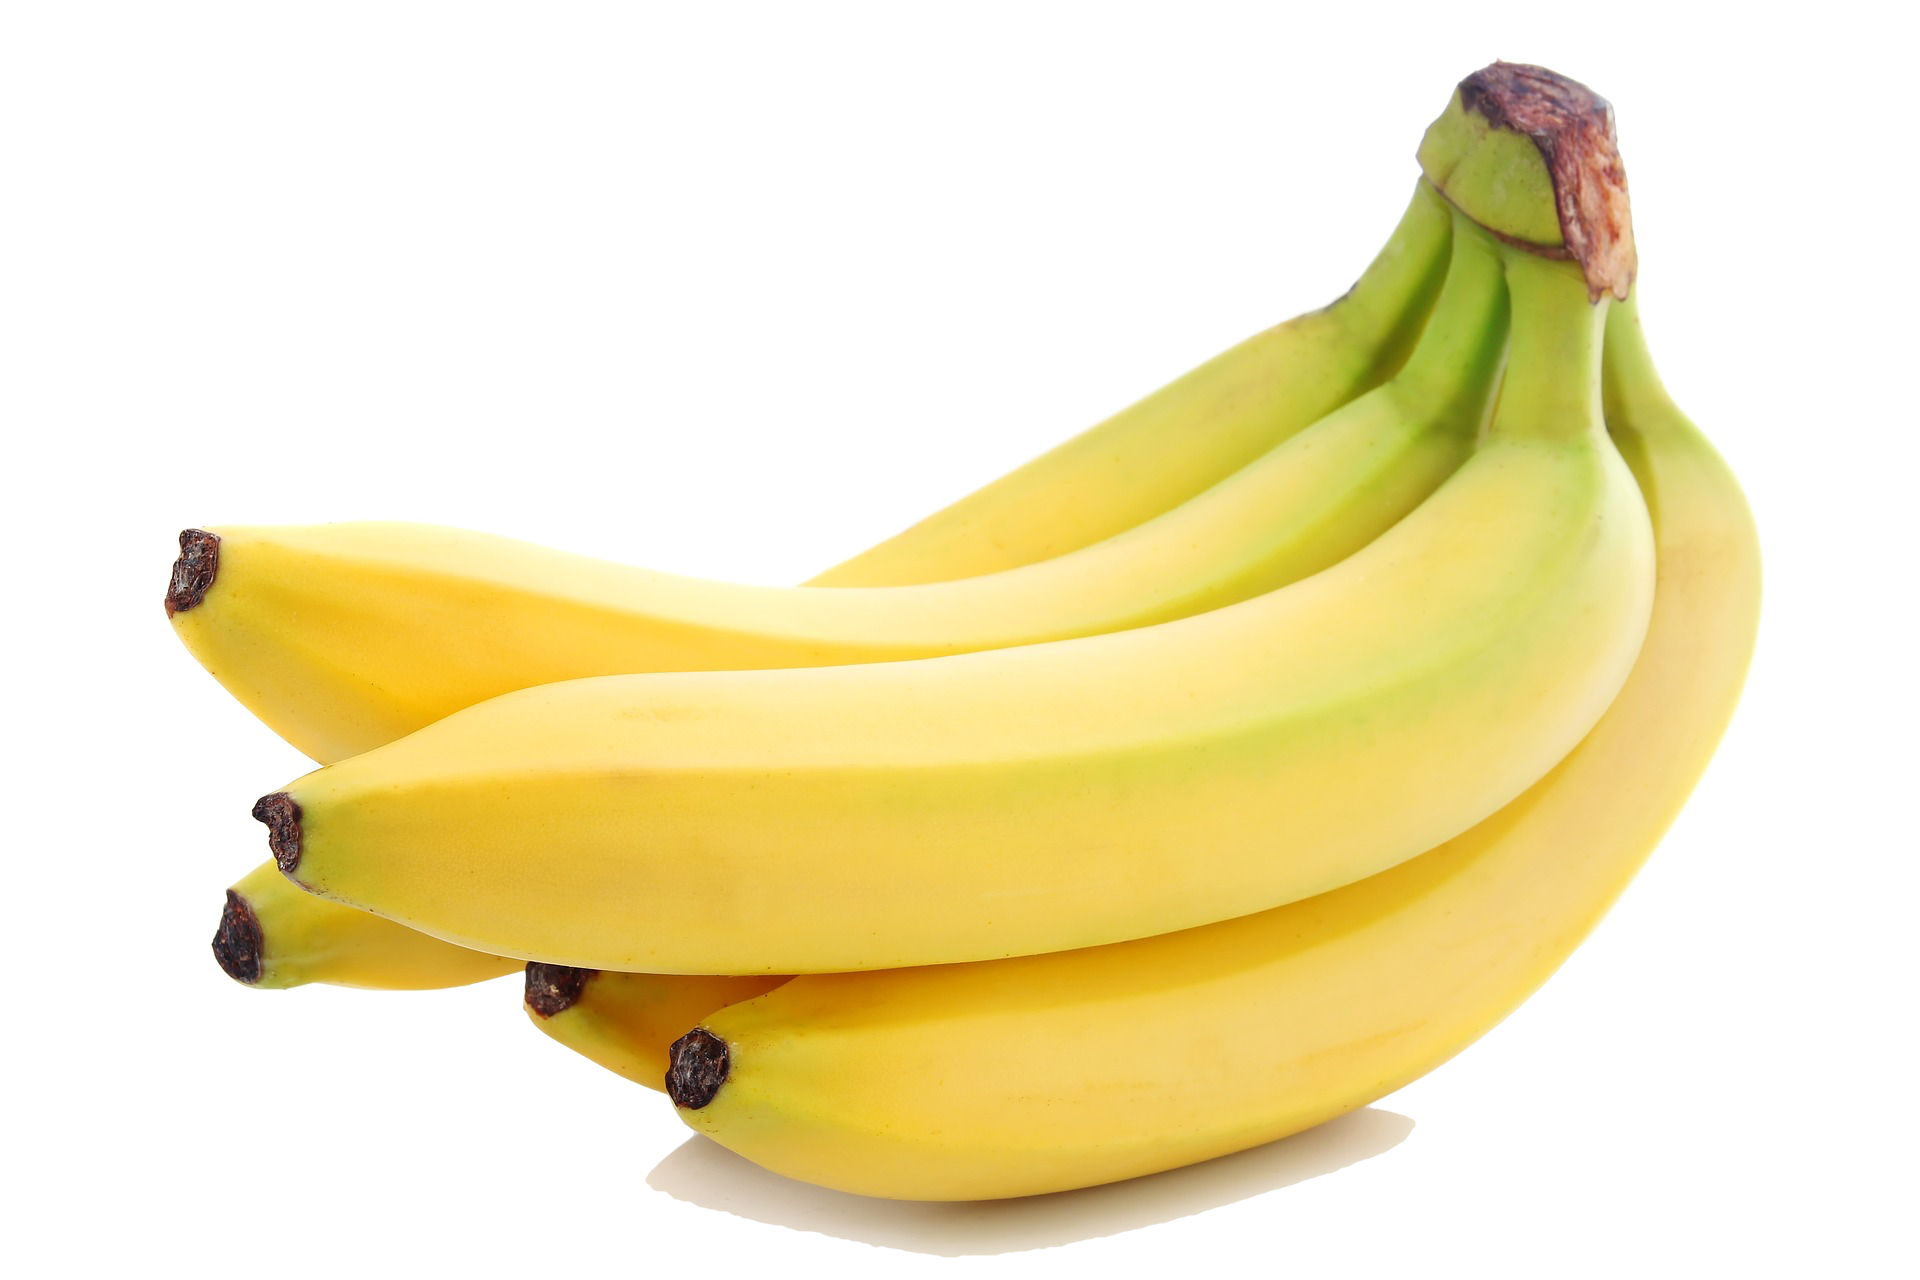 cacho_banana